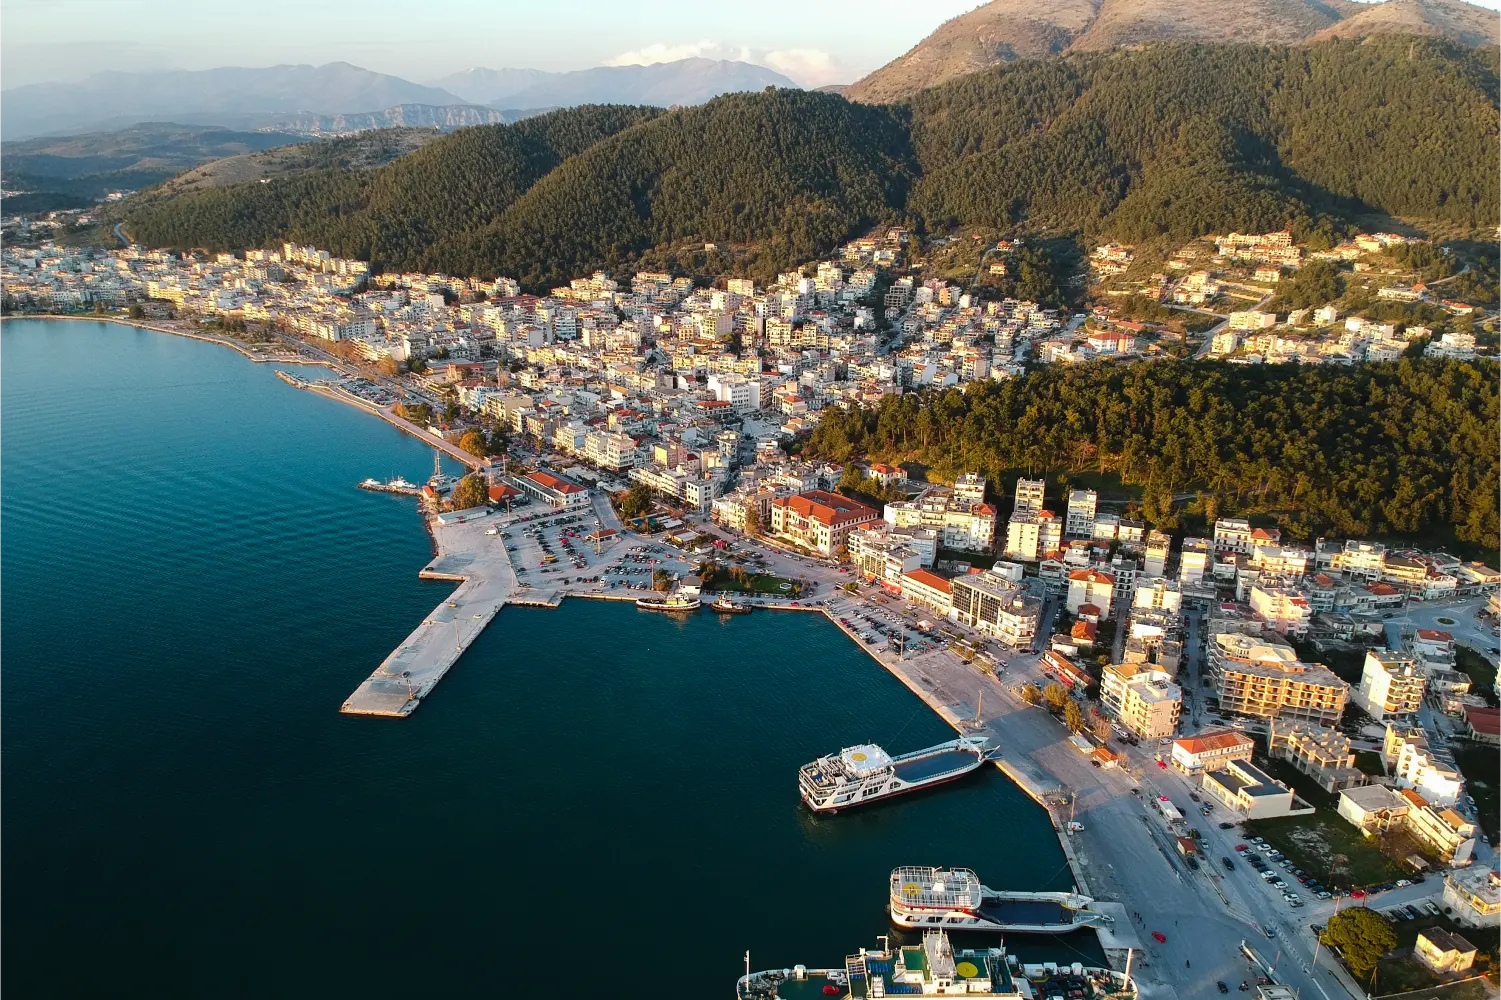 Aerial View of Igoumenitsa City Port